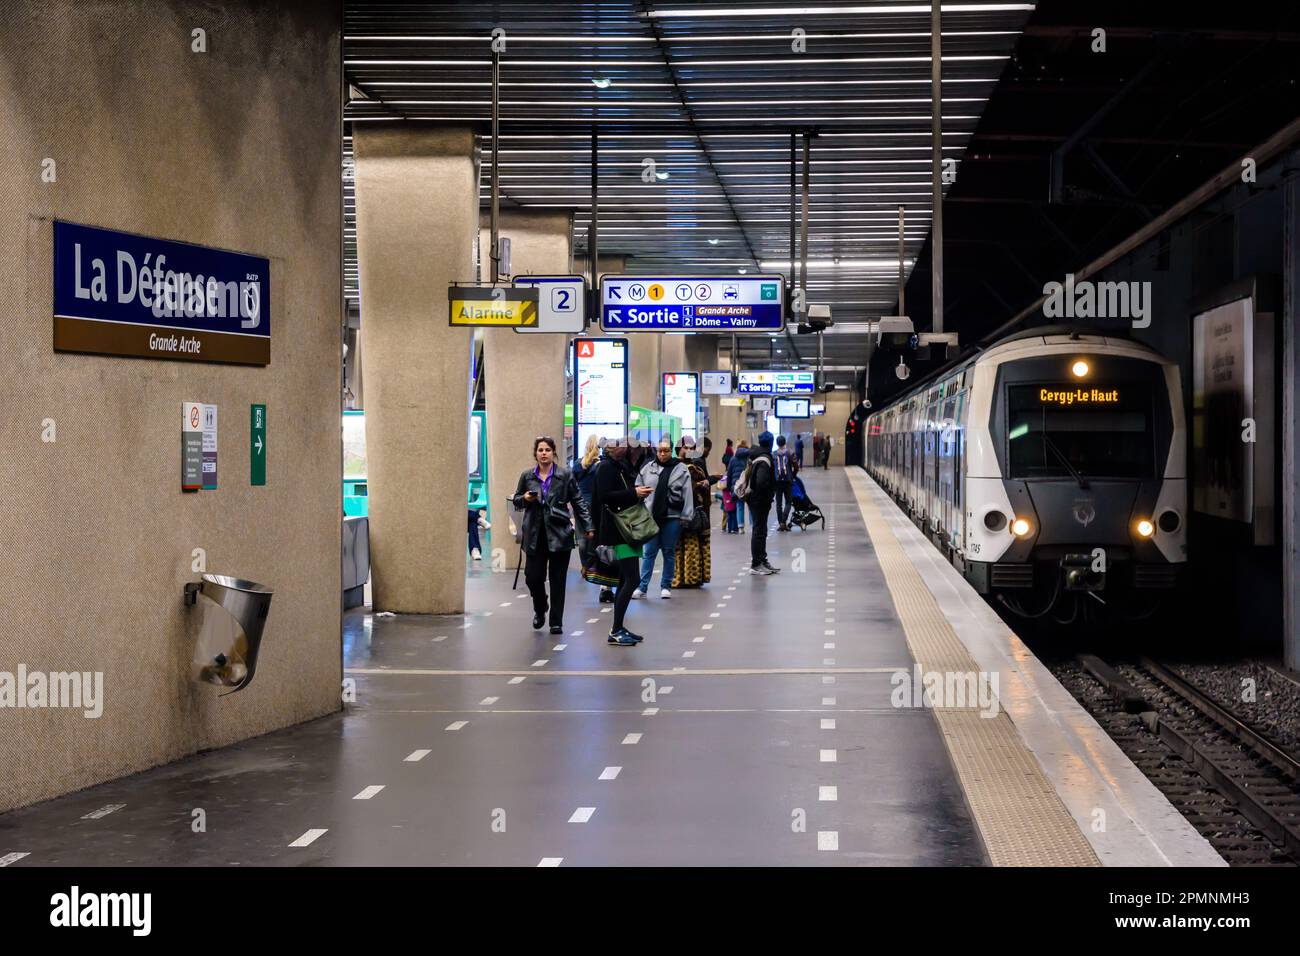 Les passagers se préparent à monter à bord du train arrivant à la plate-forme de la station de métro la Défense sur la ligne A du réseau de transports en commun RER. Banque D'Images